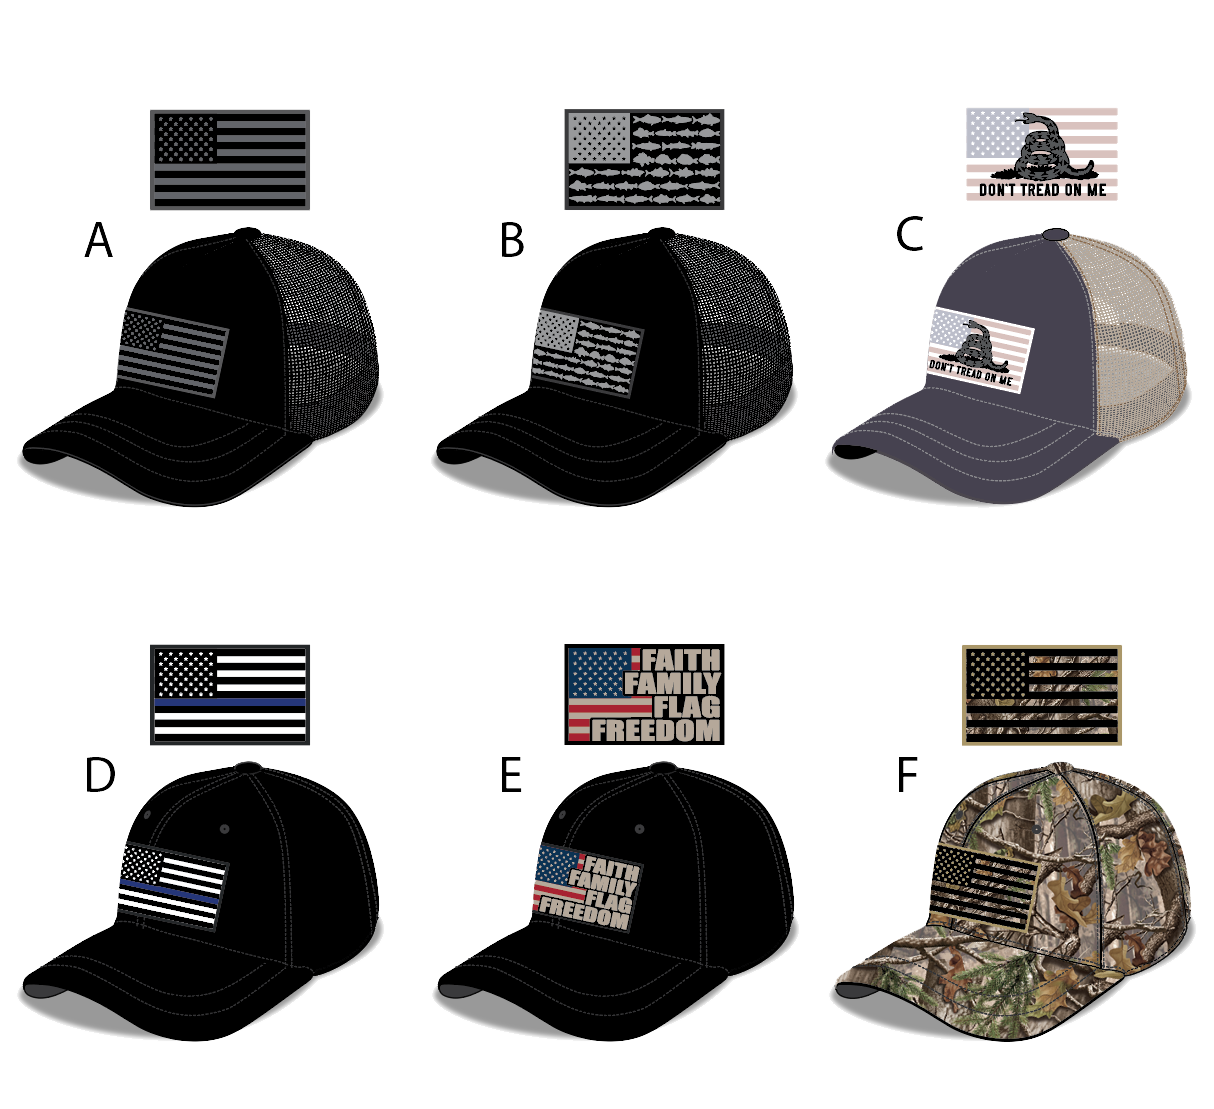 TAC GEAR AMERICAN FLAG ADJUSTABLE BALL CAP HATS